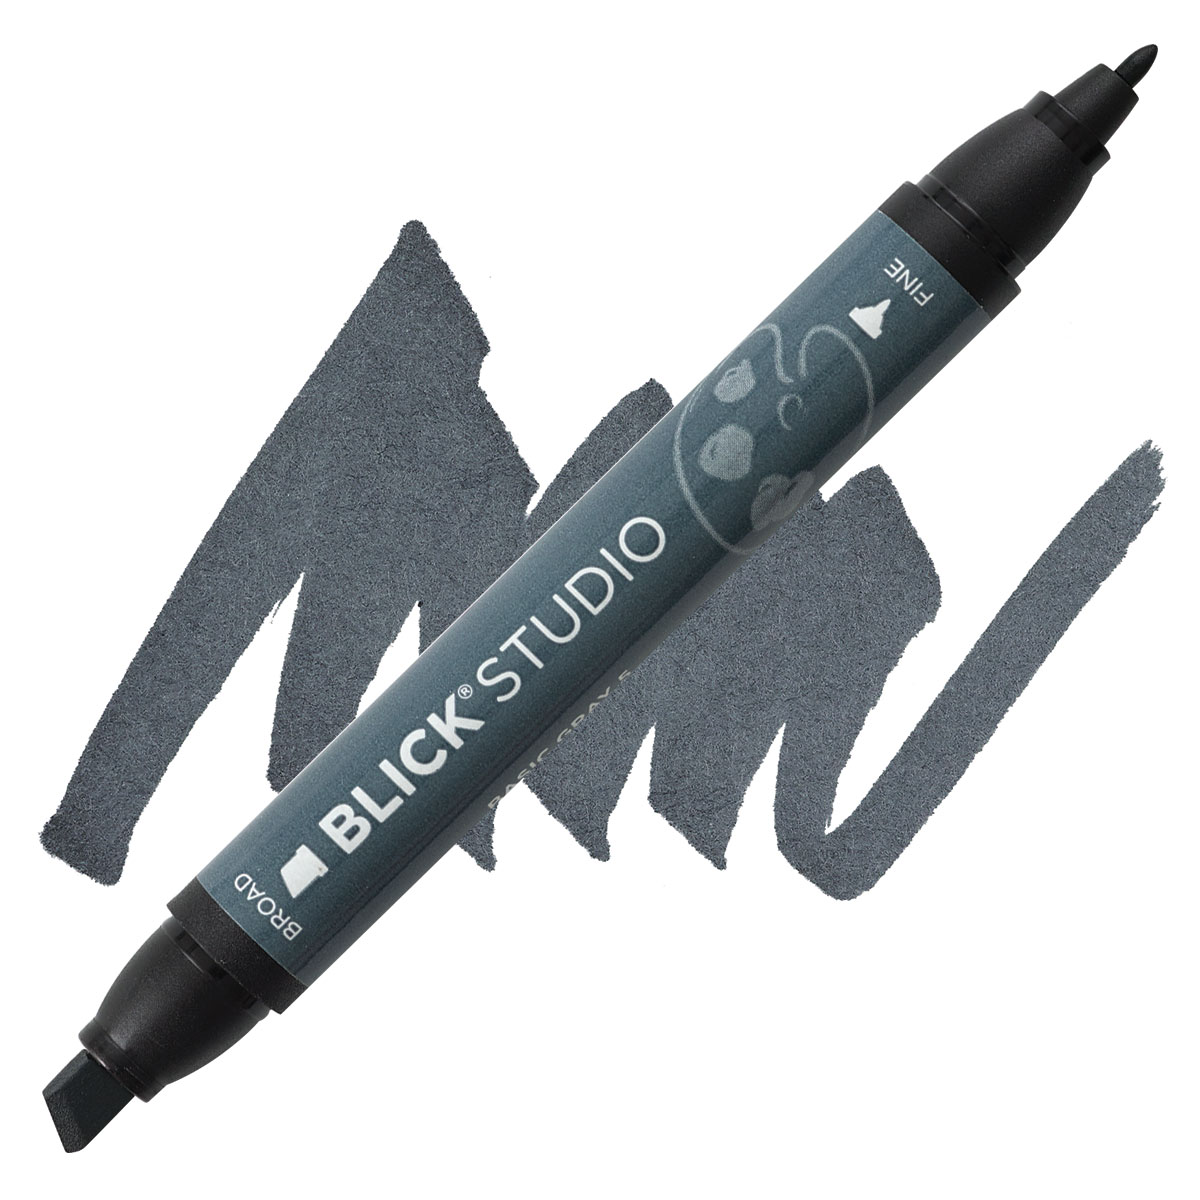 Blick Studio Brush Marker Review 